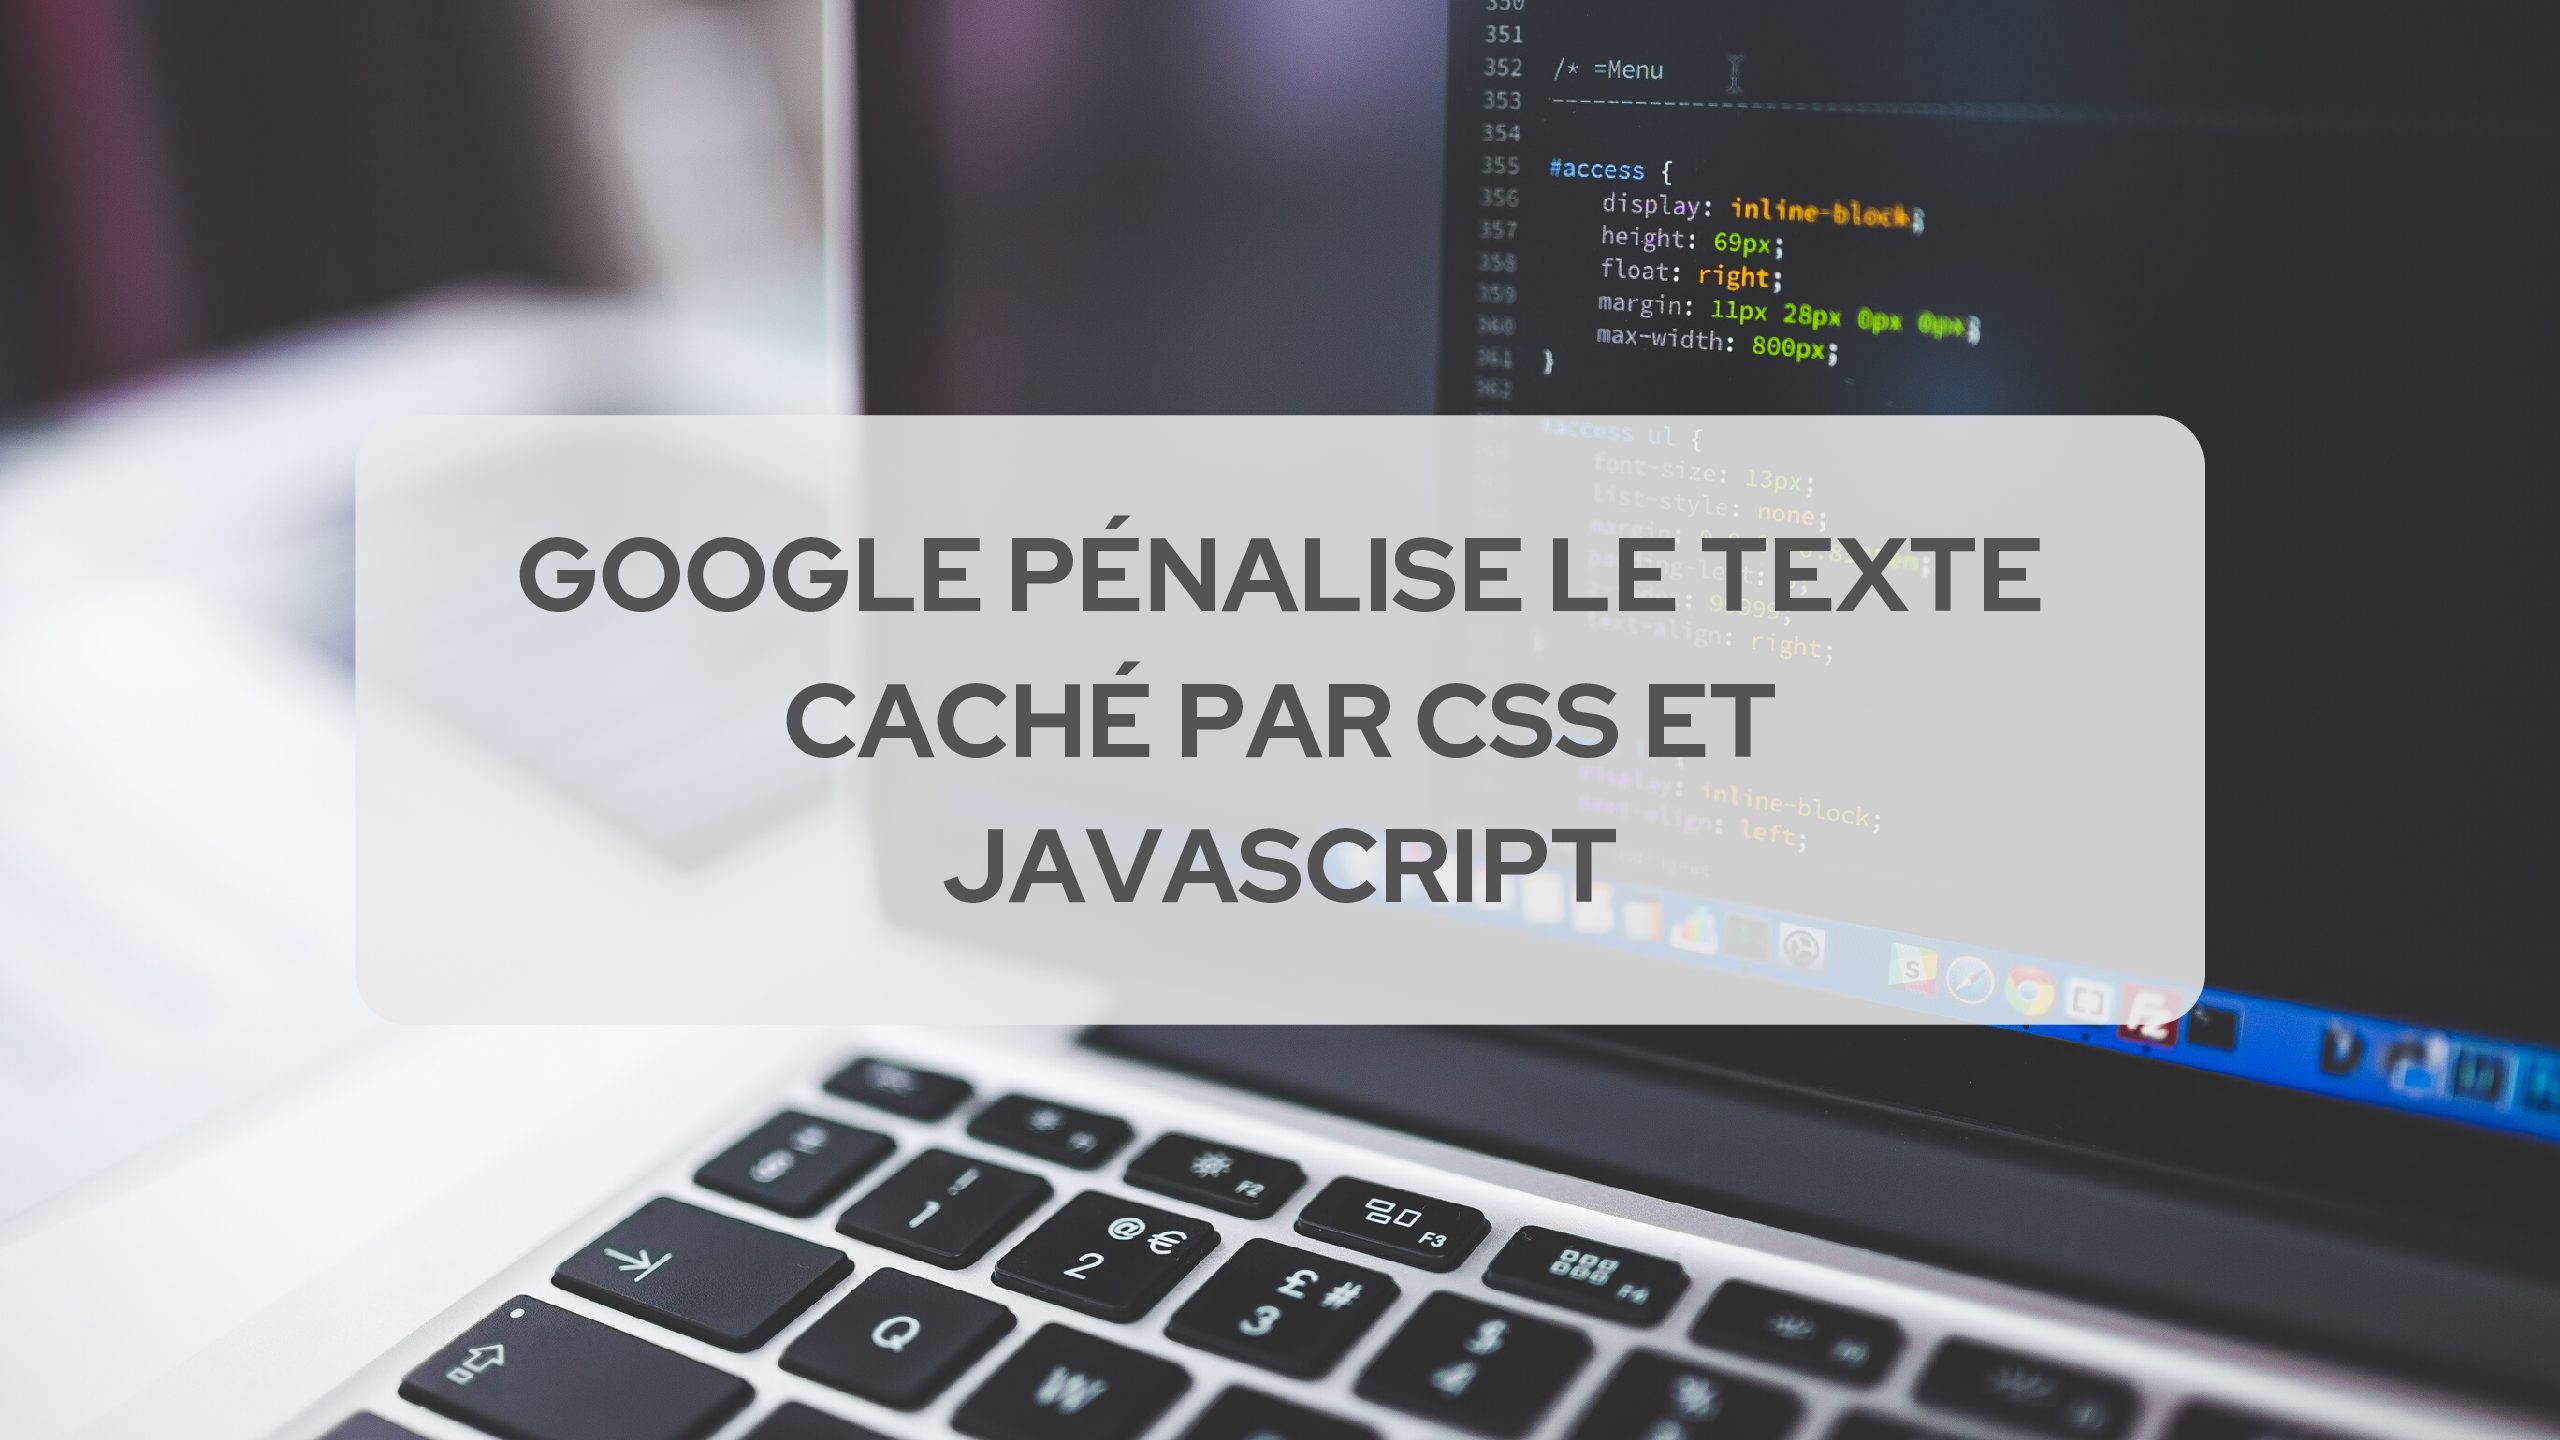 Etude : Google Pénalise le texte caché par CSS et Javascript